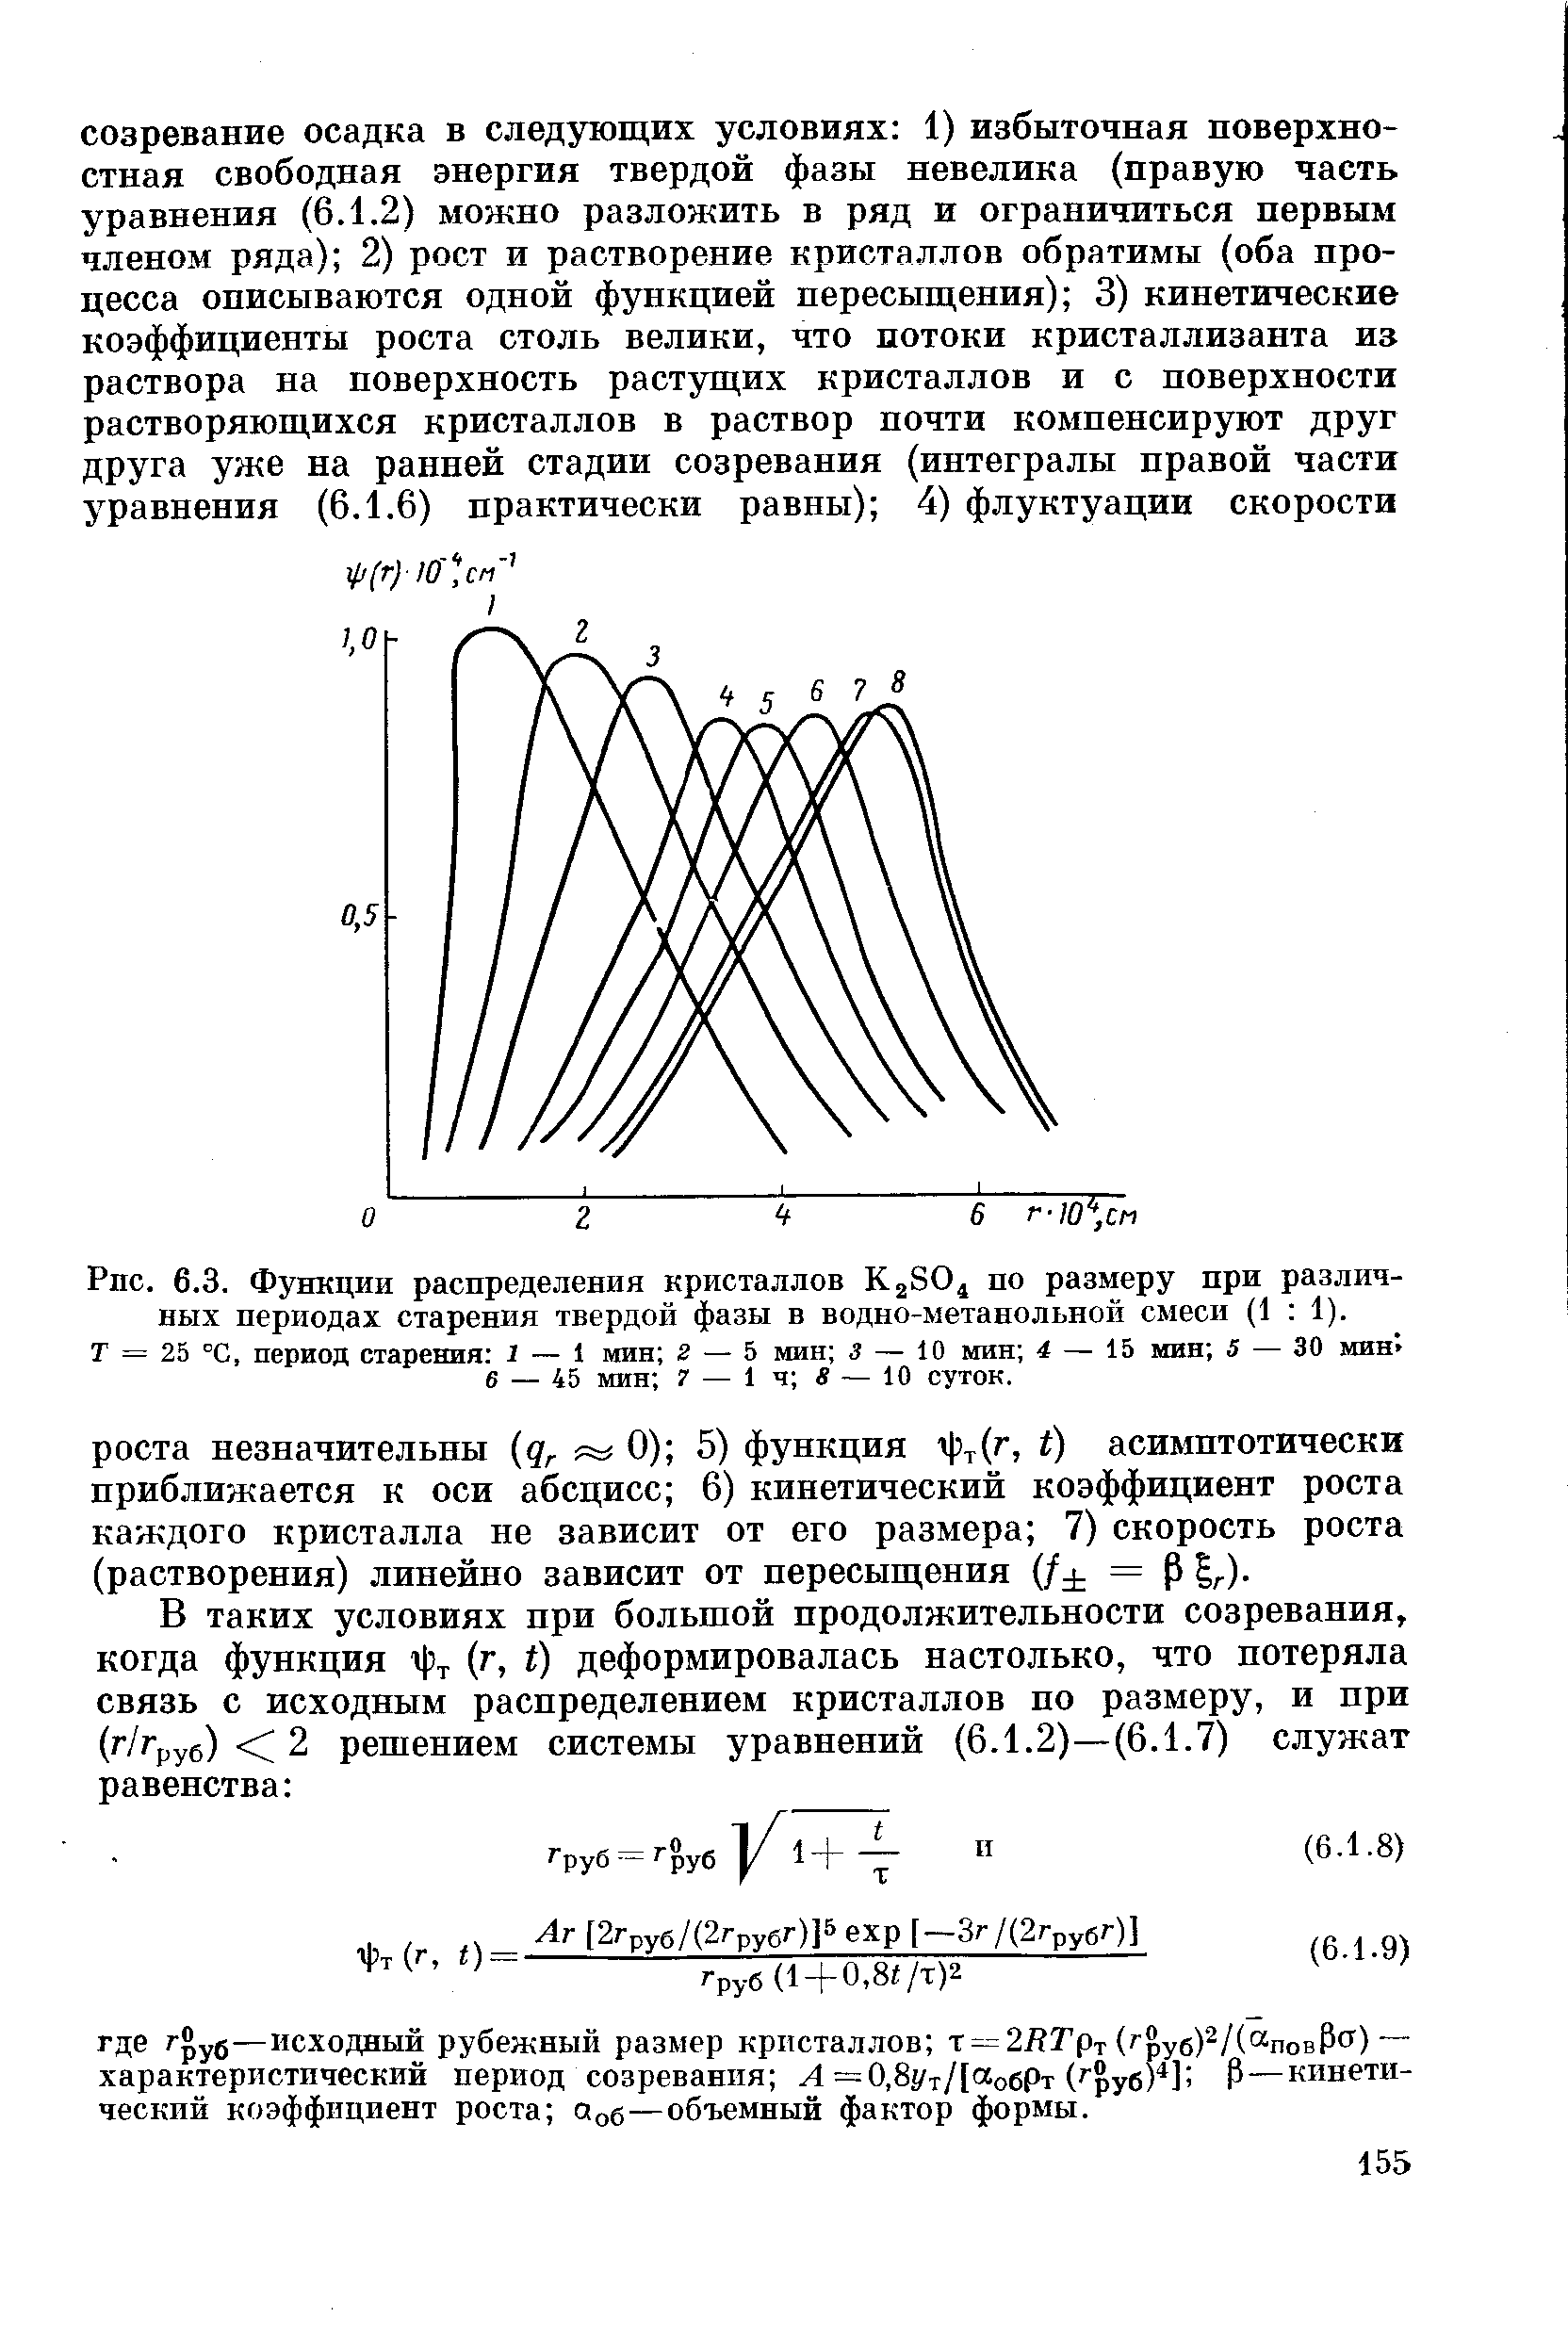 Функции распределения кристаллов КаЗО по размеру при различных периодах старения твердой фазы в водно-метанольной смеси (1 1).